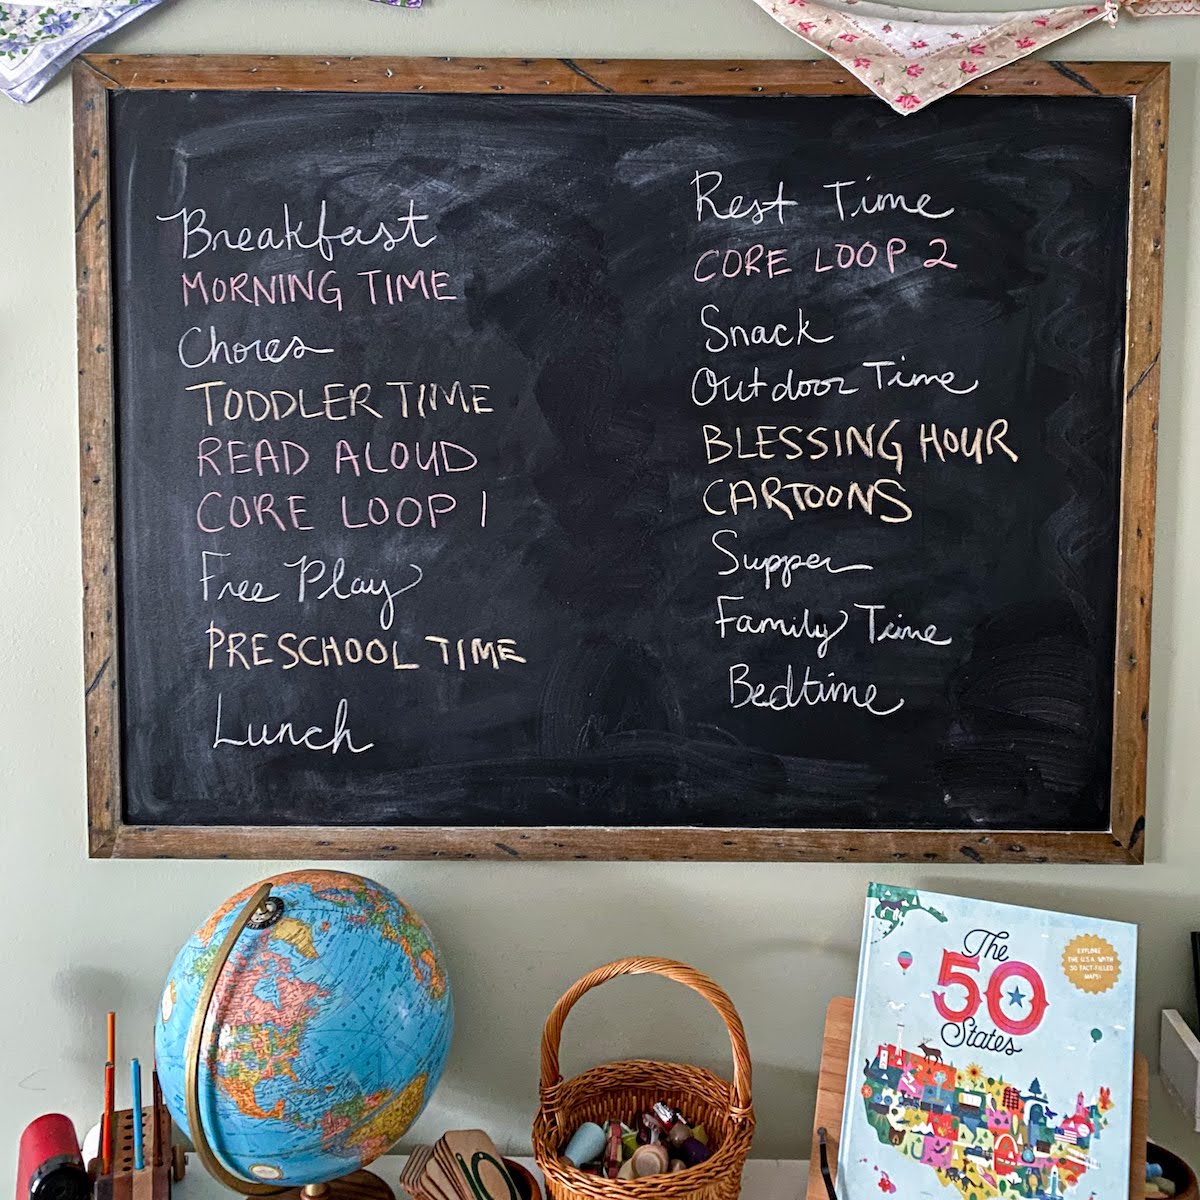 homeschool schedule written on a chalkboard.